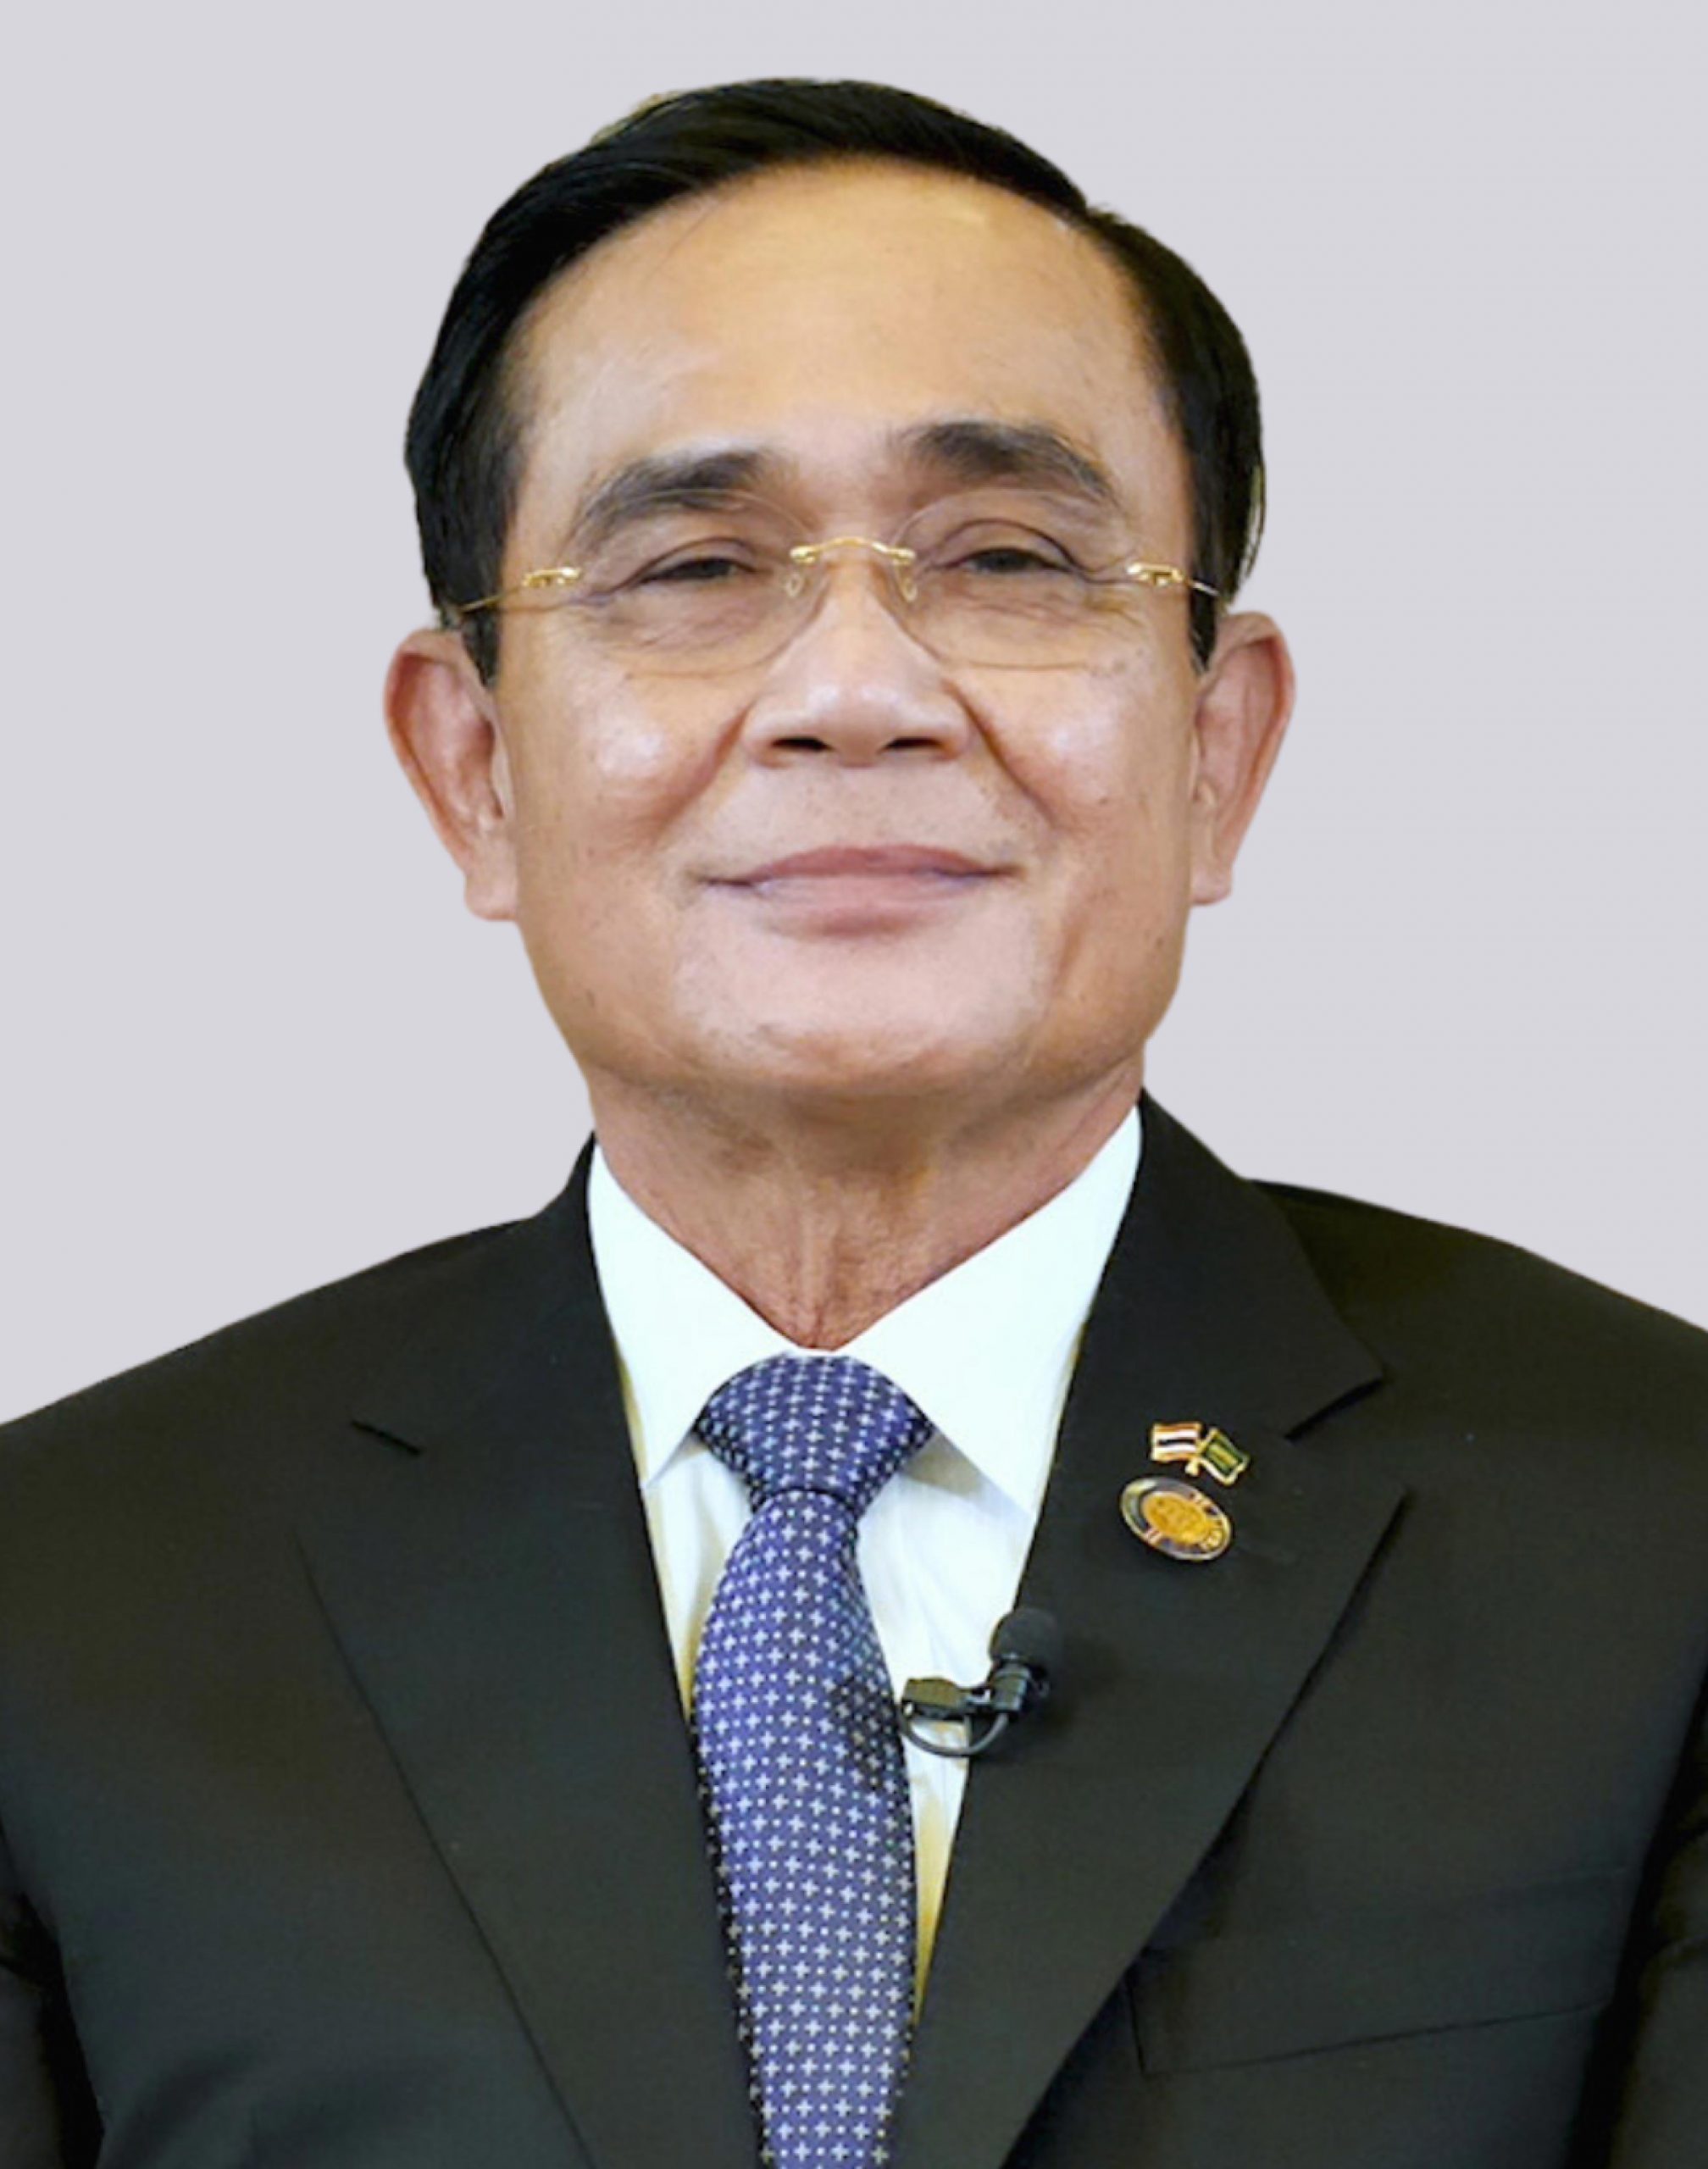 ประยุทธ์ จันทร์โอชา แคนดิเดตนายกรัฐมนตรี รวมไทยสร้างชาติ